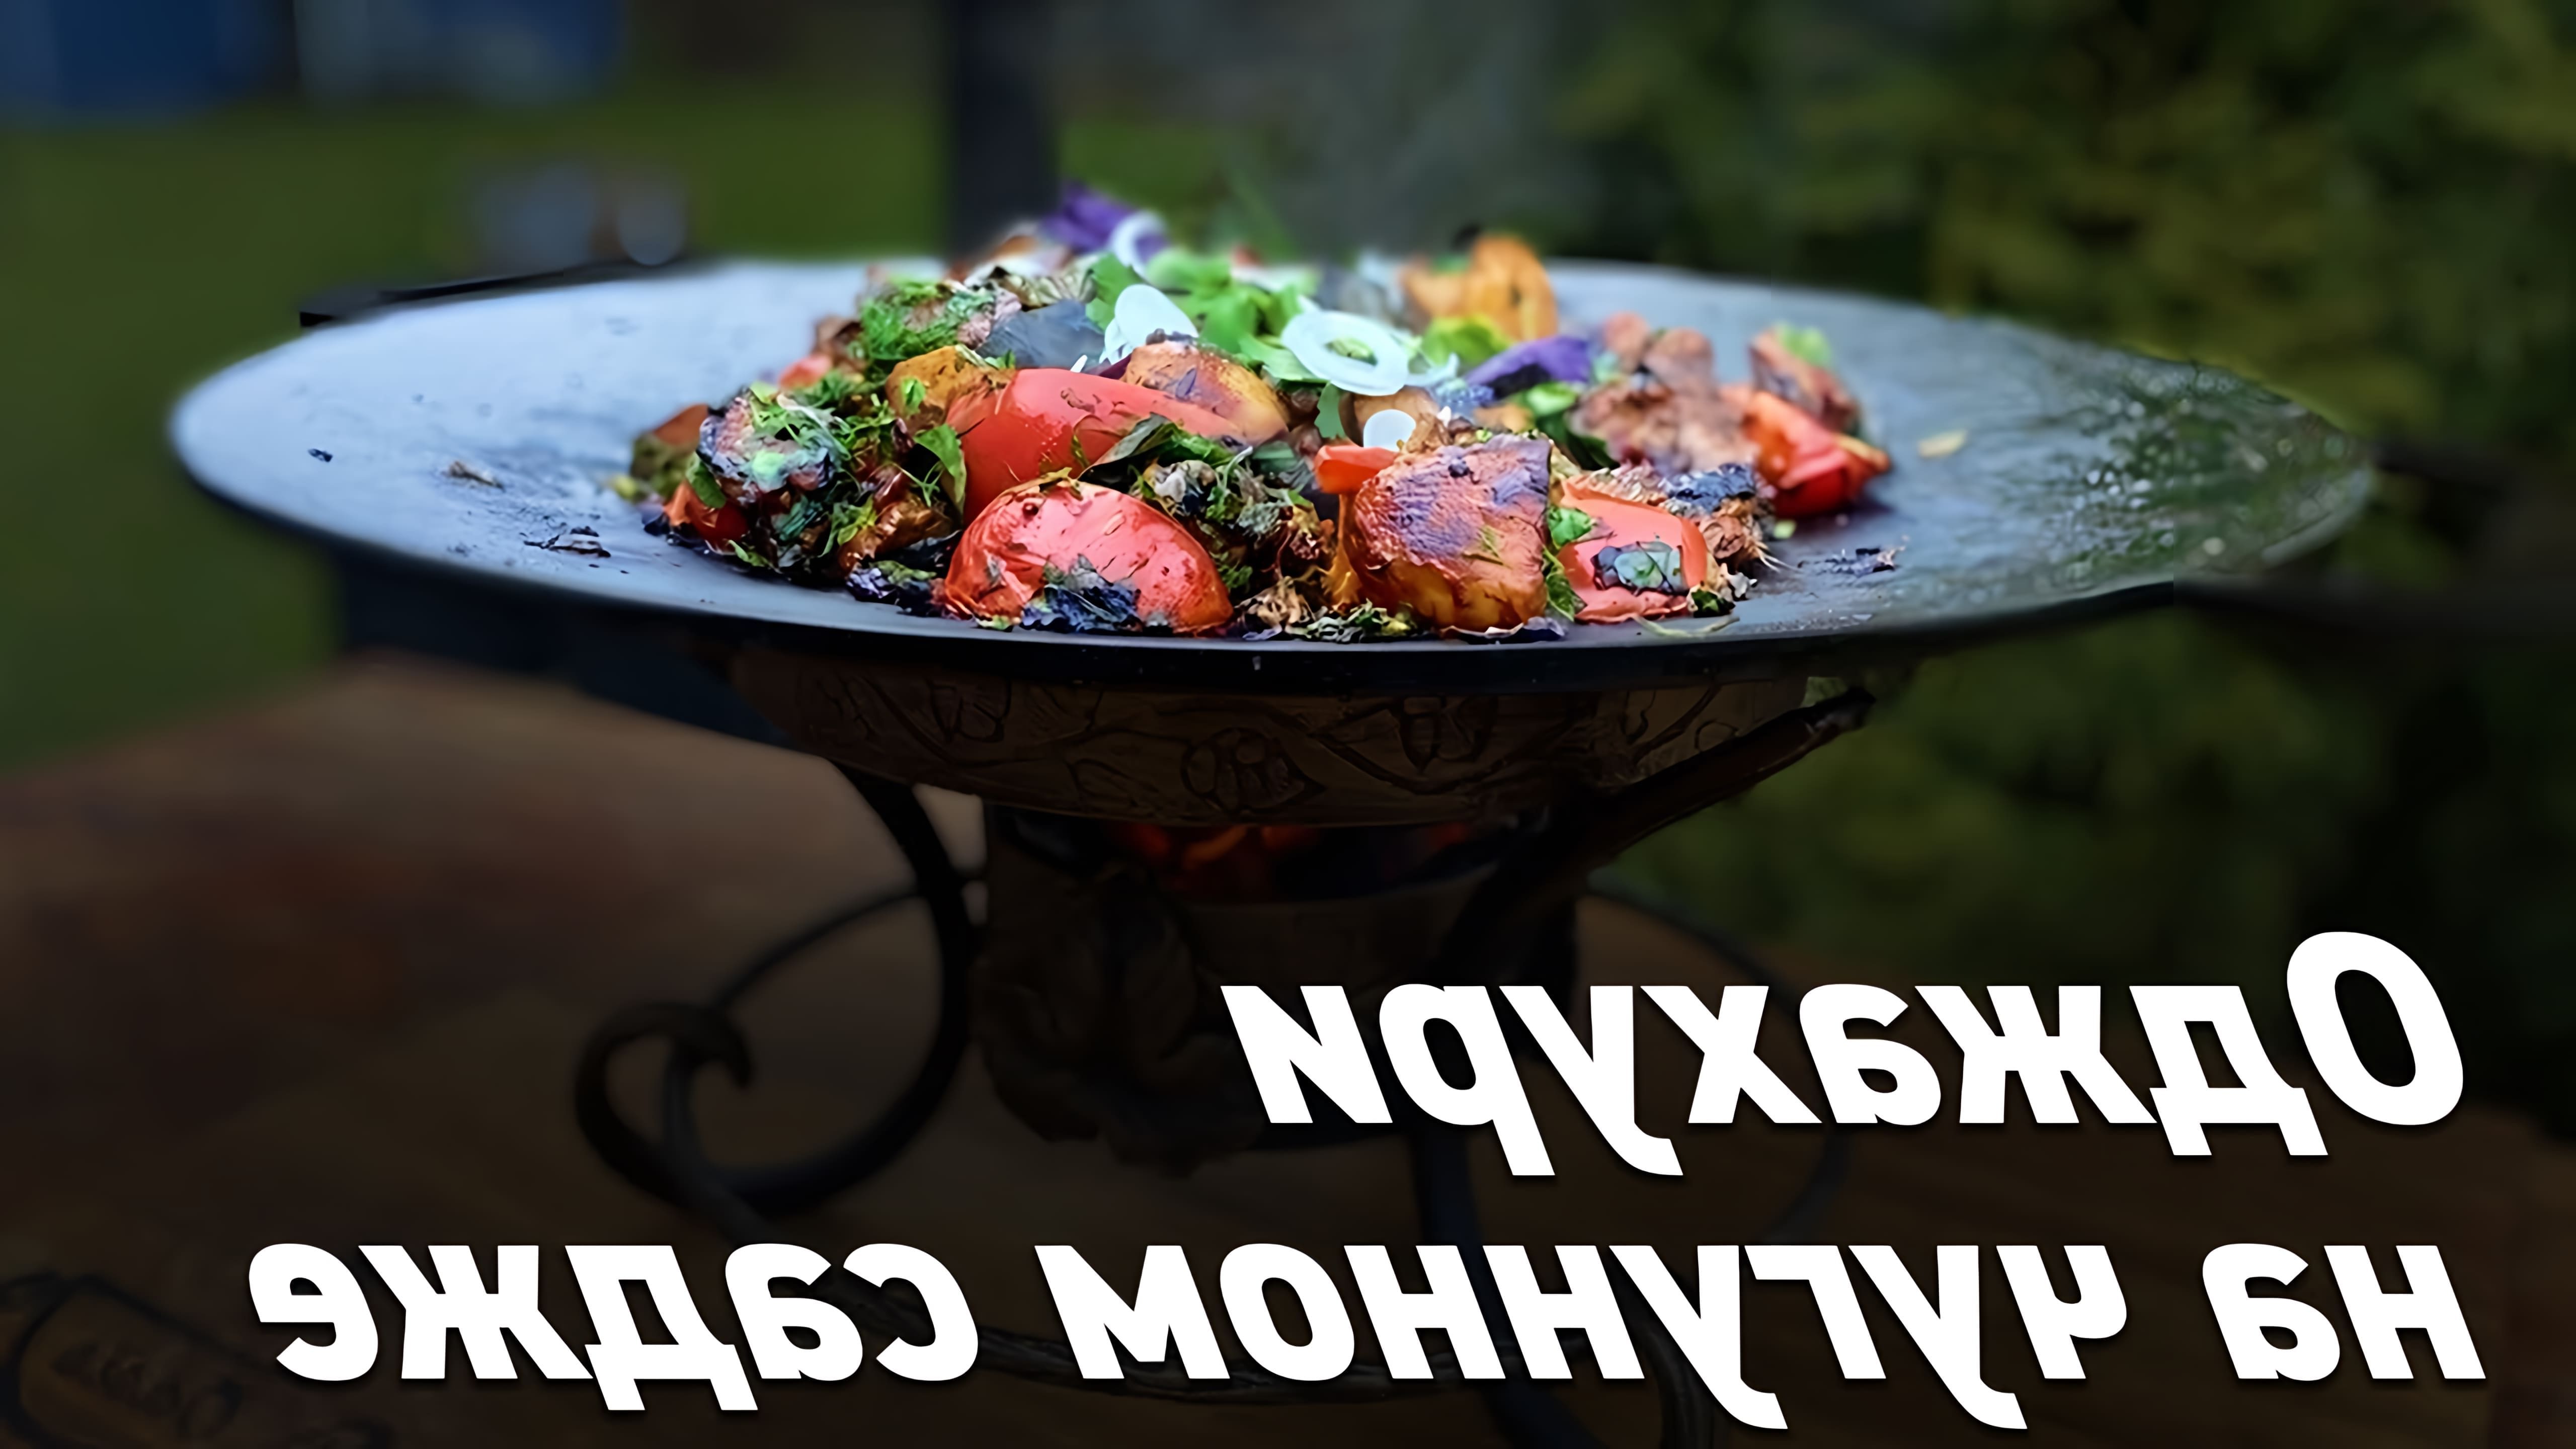 В этом видео демонстрируется процесс приготовления грузинского блюда "а джахуль" на чугунном садже